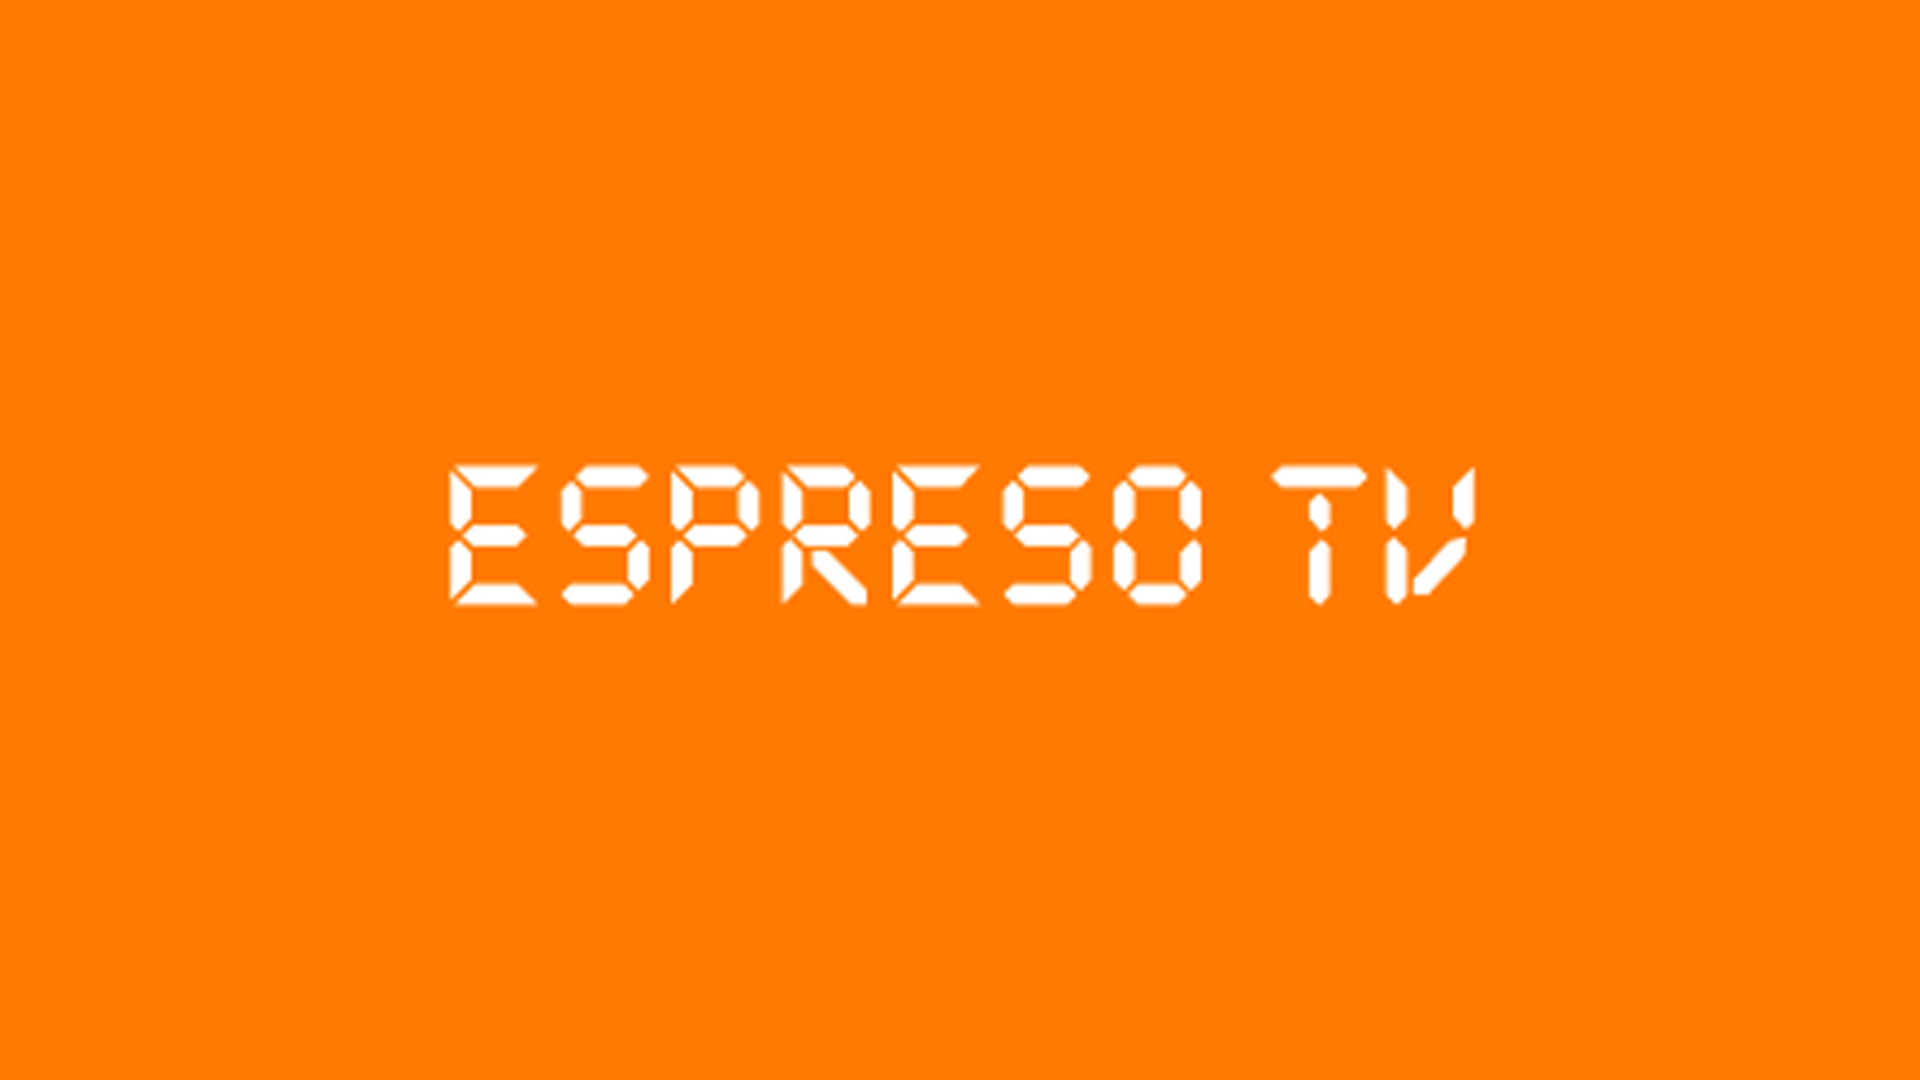 Еспресо TV/Espreso TV